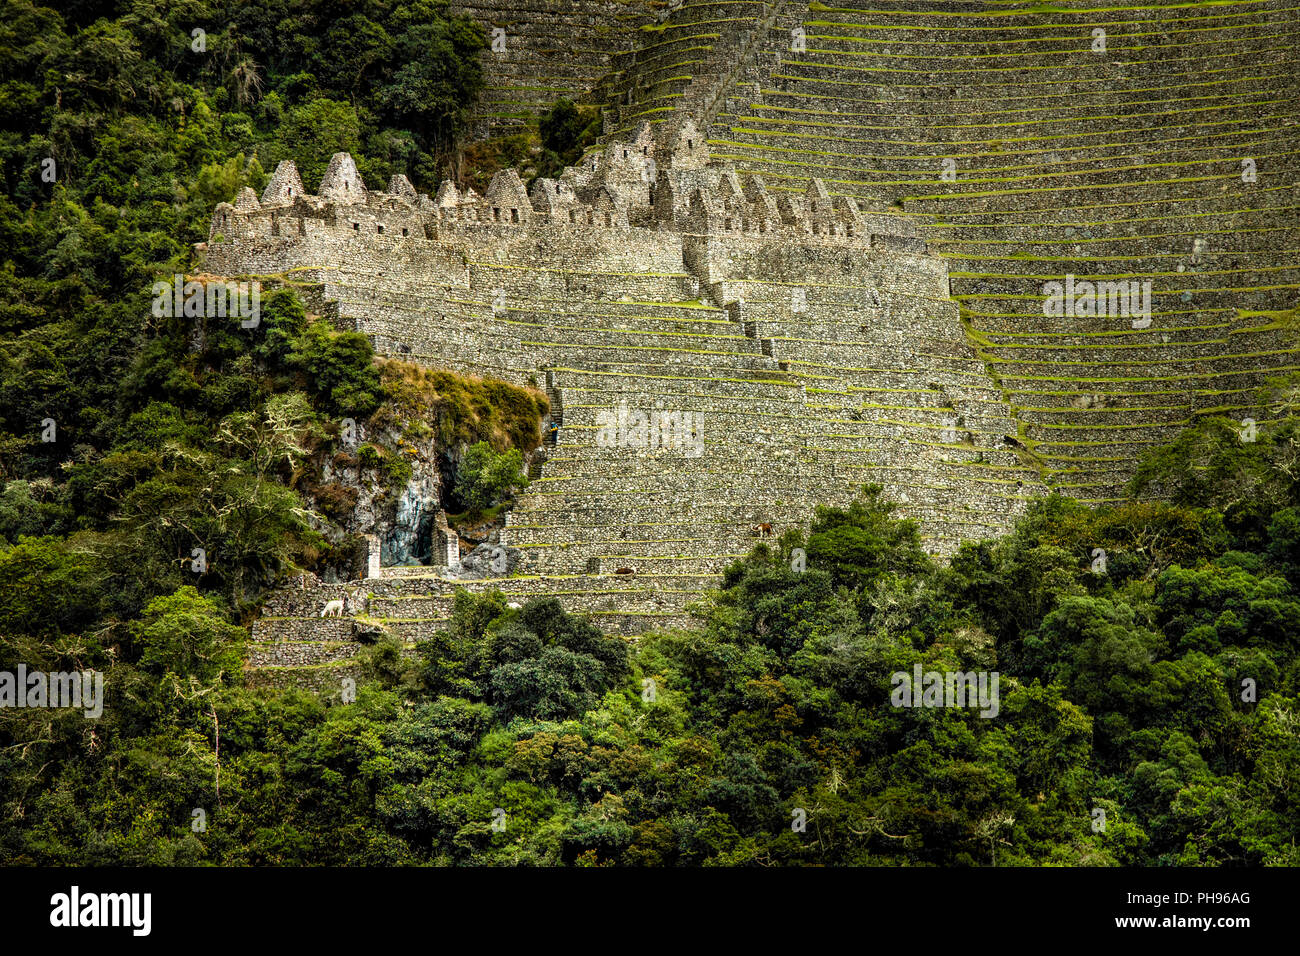 Le Rovine Inca di Winay Wayna, compresi i terrazzi agricoli e dei suoi microclimi,, lungo il cammino degli Inca alla scoperta di Machu Picchu. La Valle Sacra, Perù Foto Stock